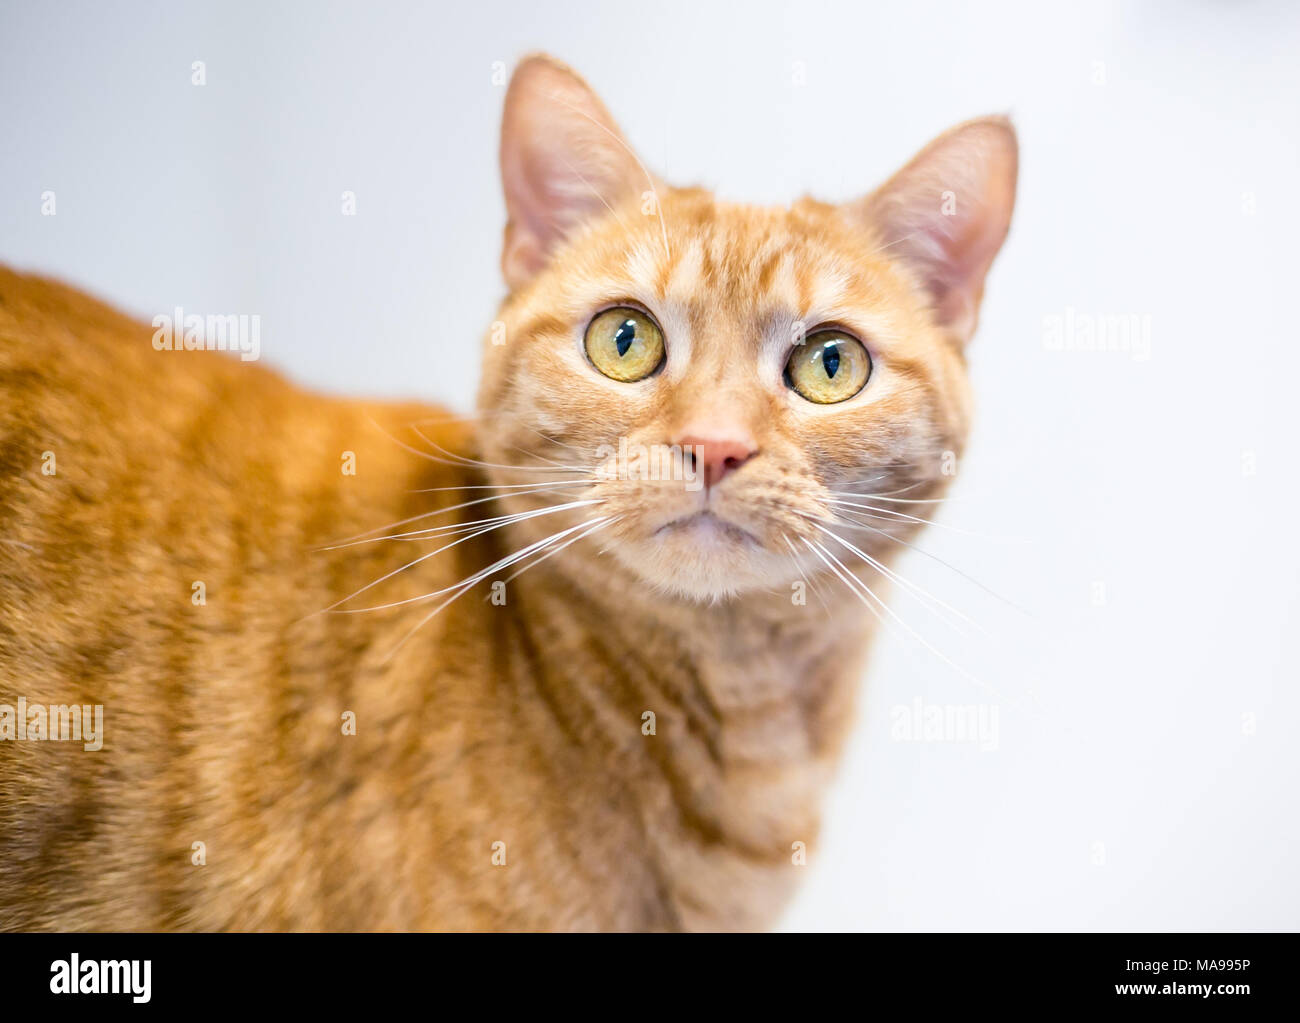 Portrait d'un chat orange tabby shorthair domestique sur un fond blanc Banque D'Images